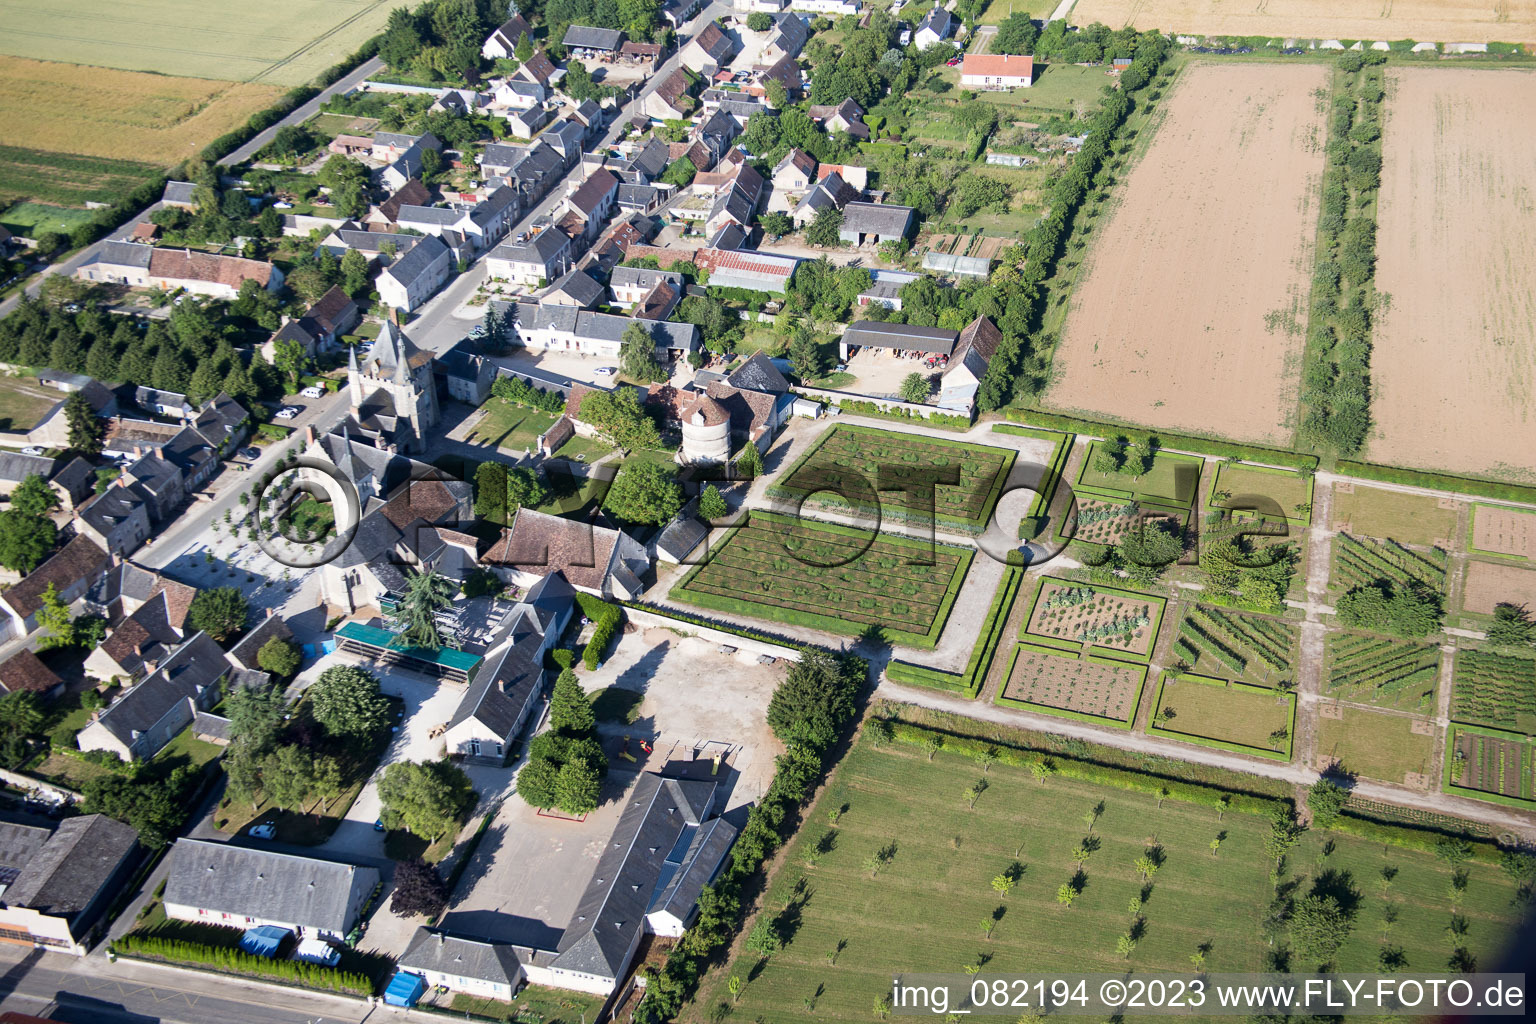 Talcy im Bundesland Loir-et-Cher, Frankreich von der Drohne aus gesehen